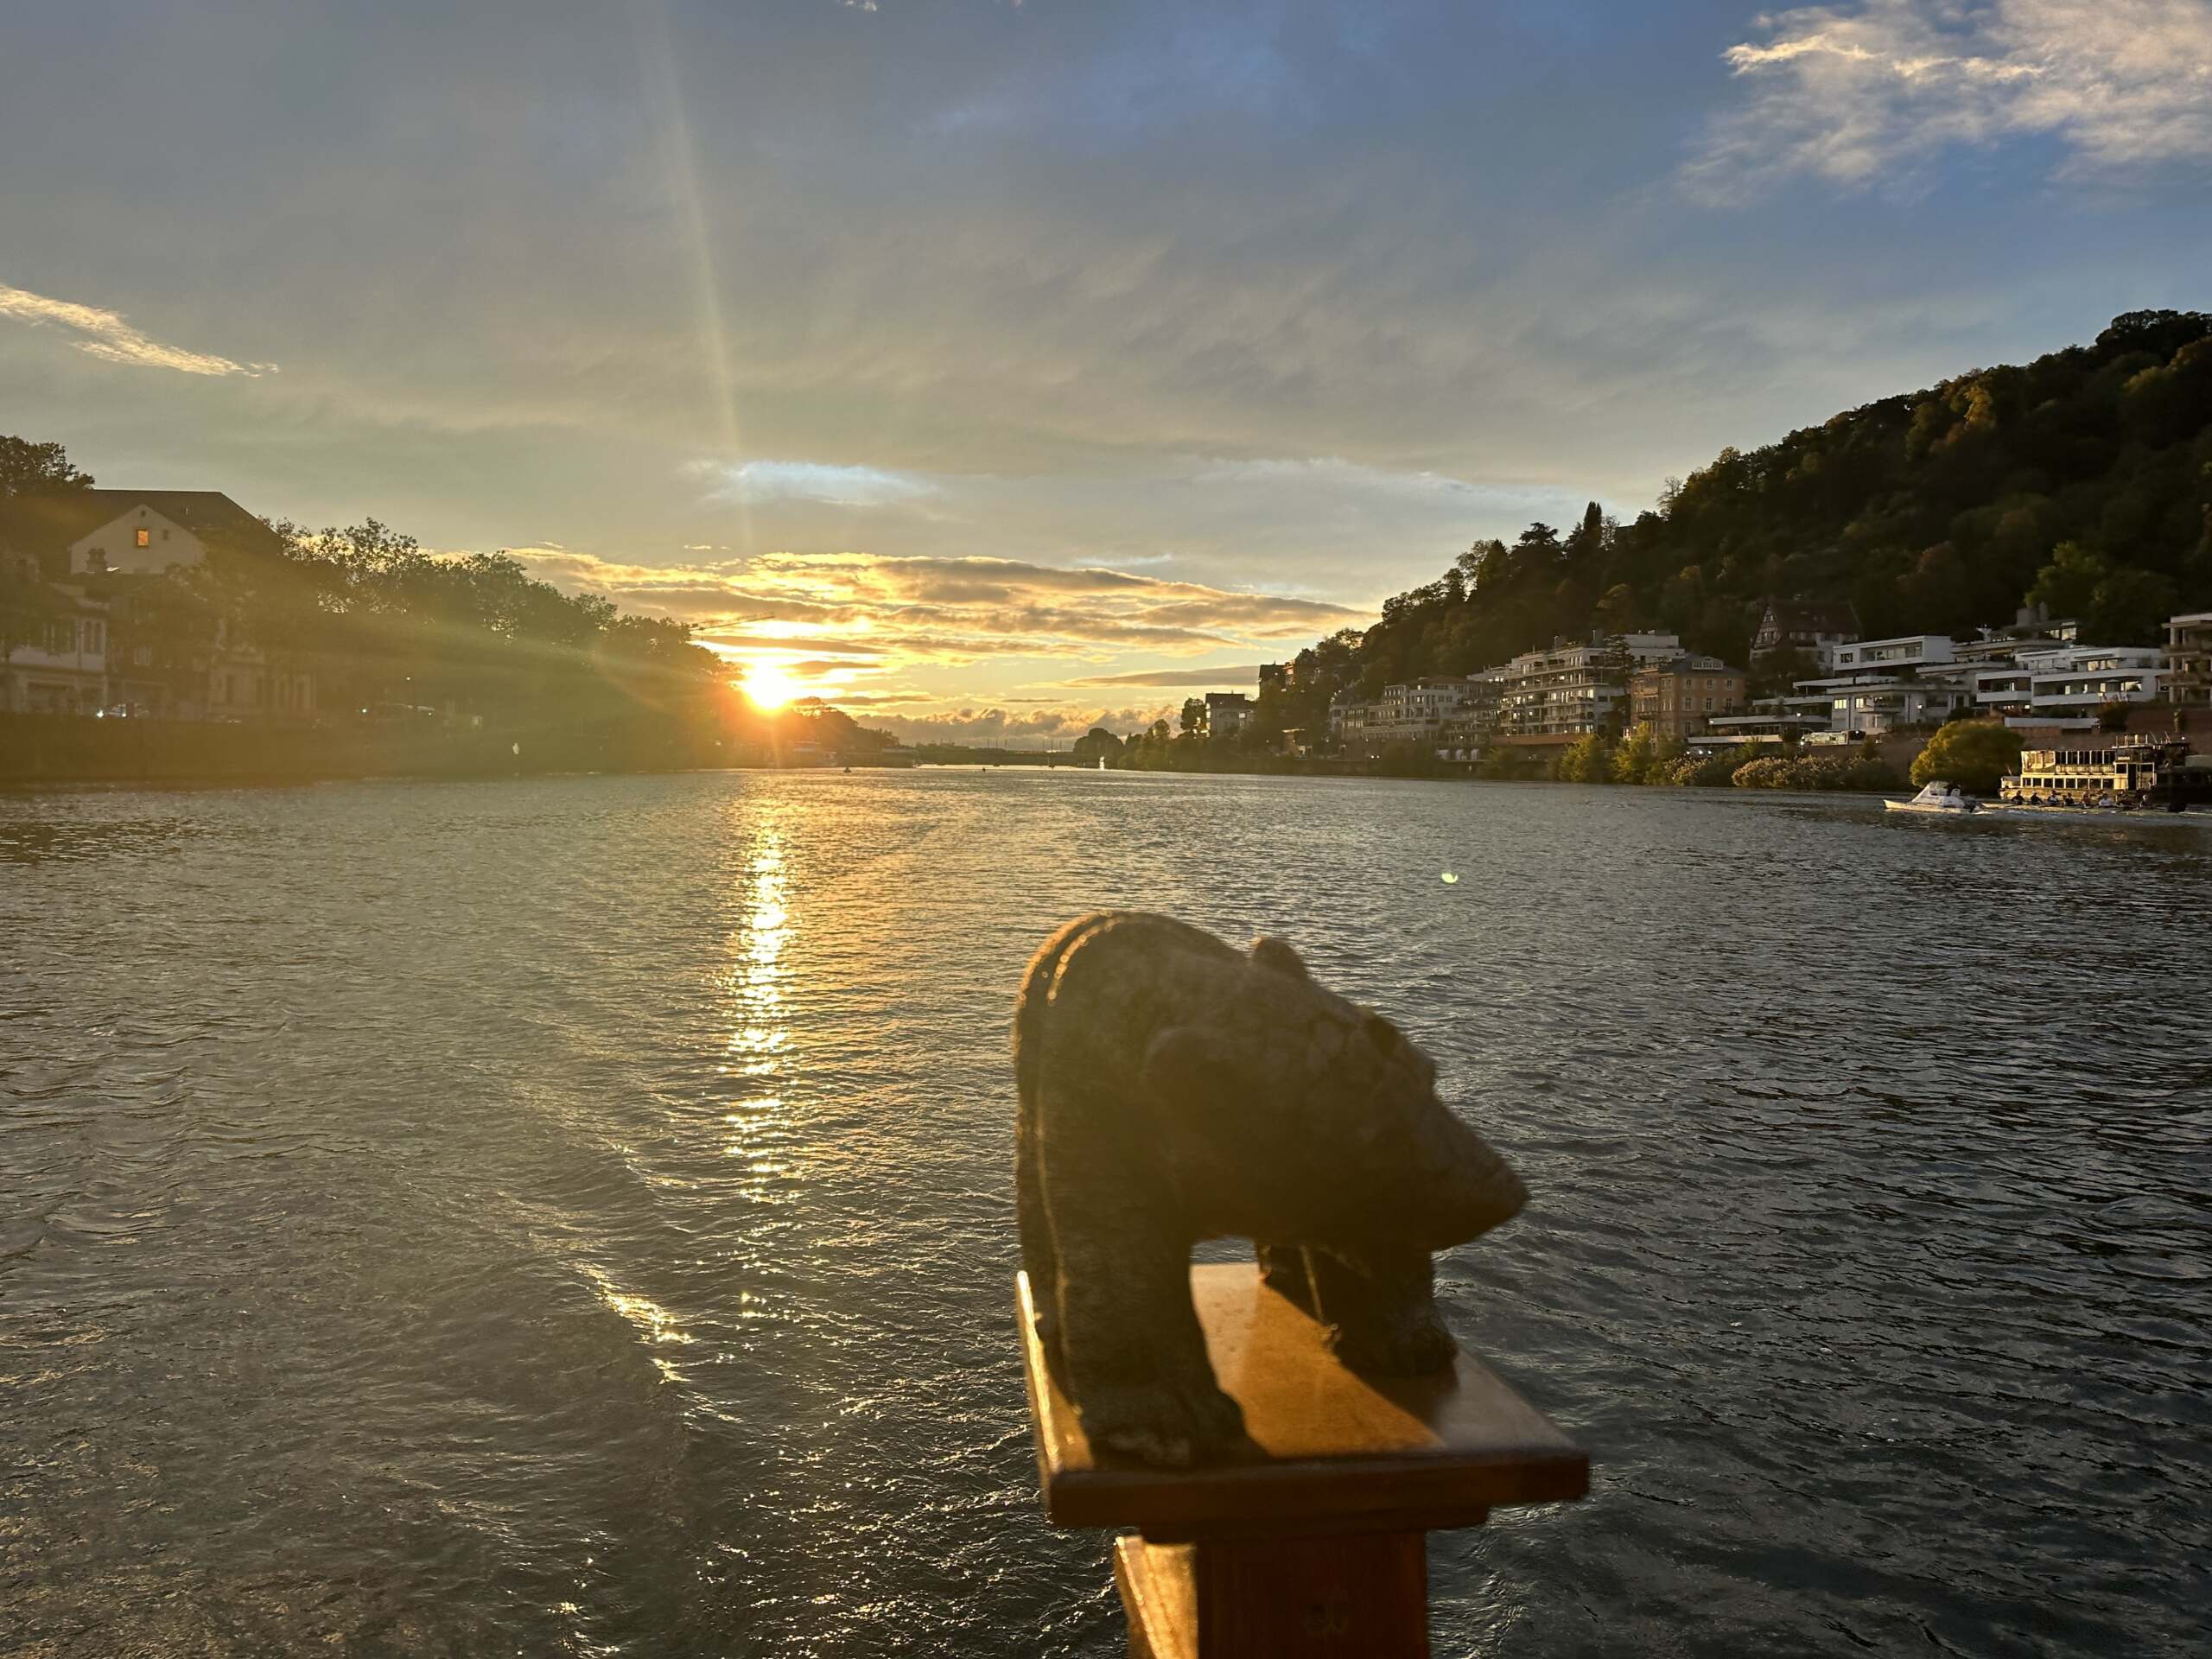 Der Neckar in Heidelberg liegt im Sonneruntergang, von einem Boot aus fotografiert, vorne sieht man eine Bärenfigur aus Holz